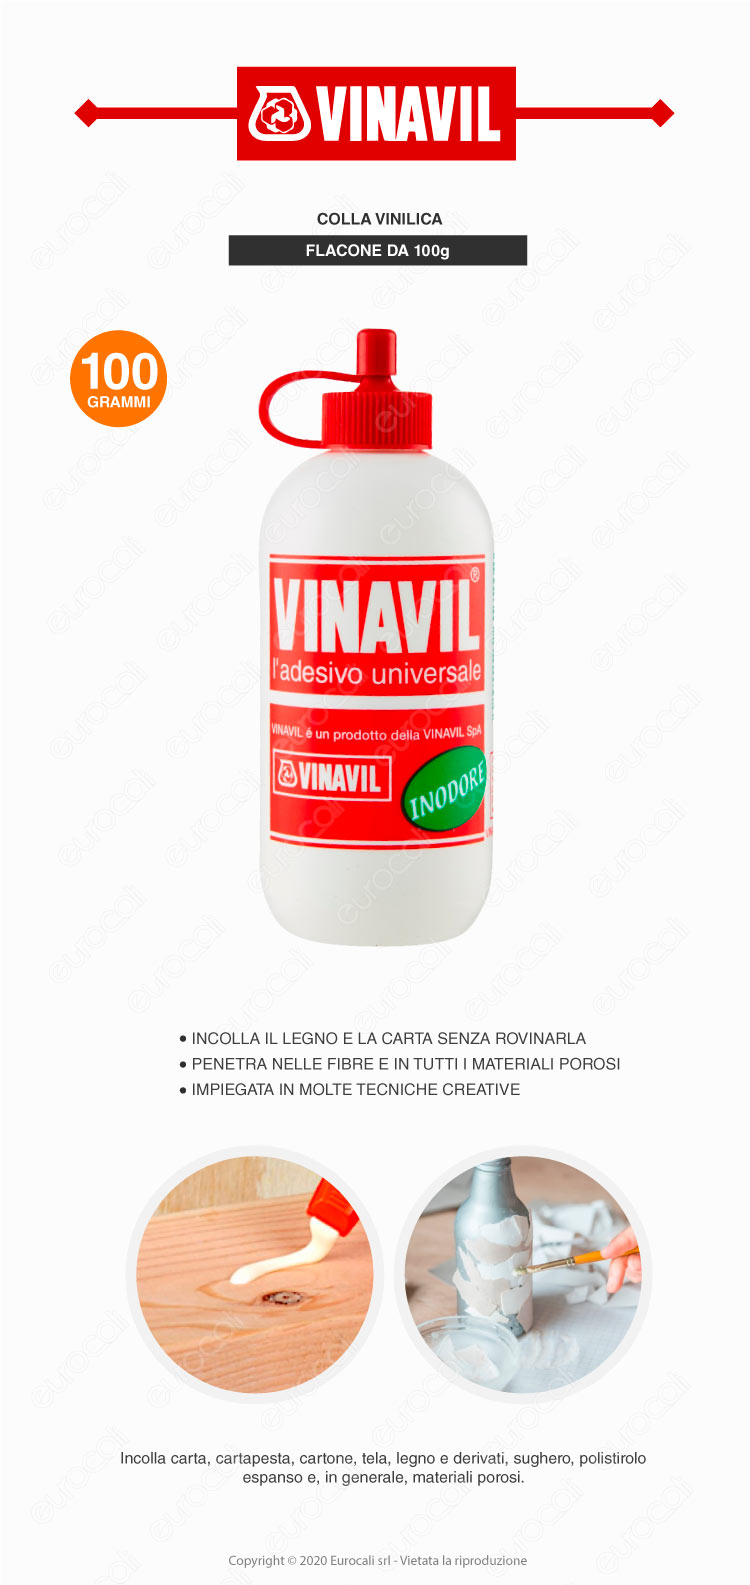 Adesivo Universale Colla Vinilica Inodore Trasparente da 100g Vinavil